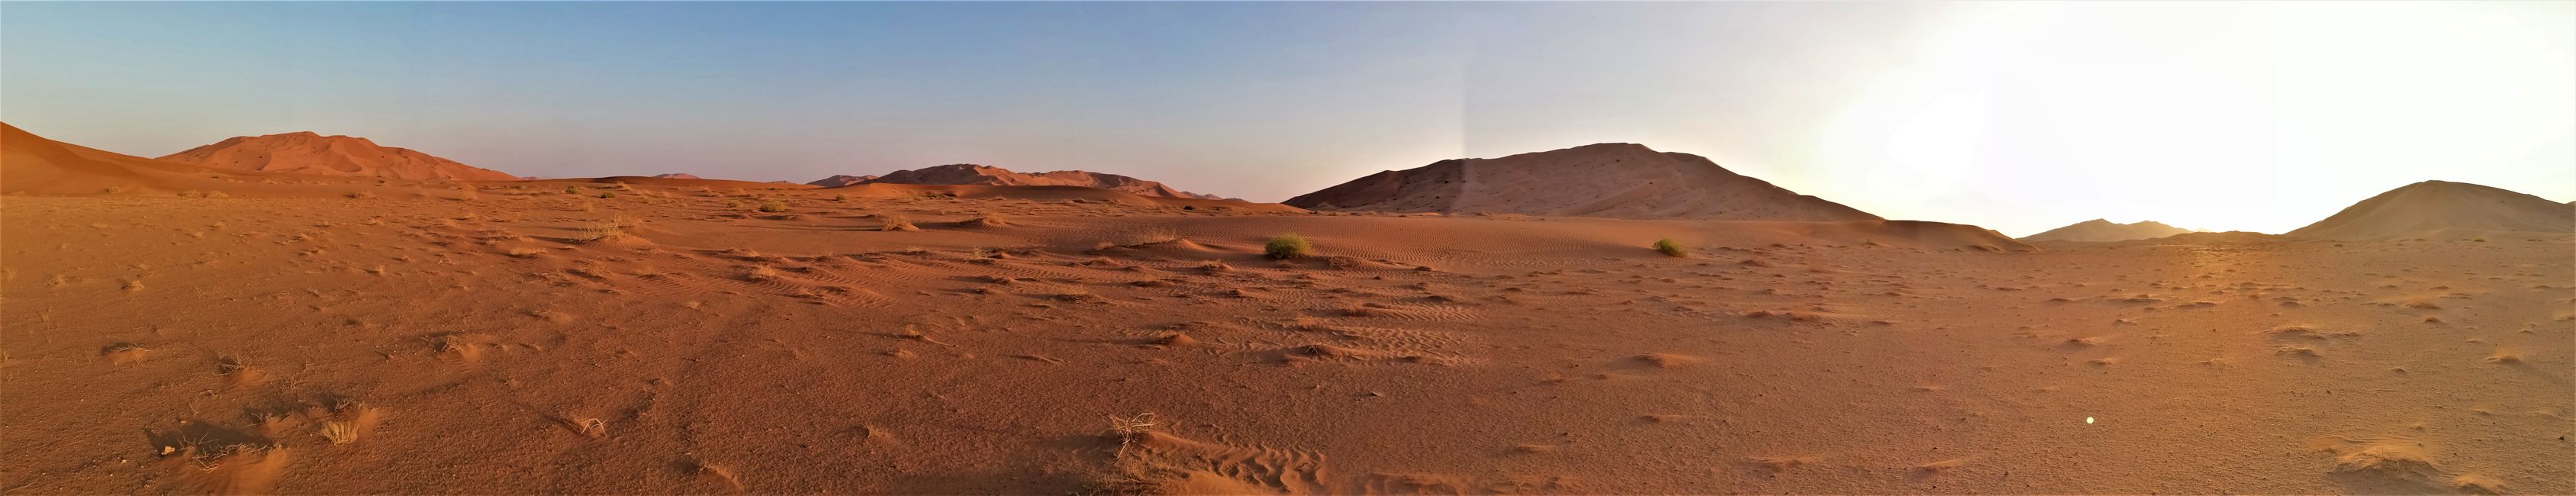 Oman "Empty Quarter"